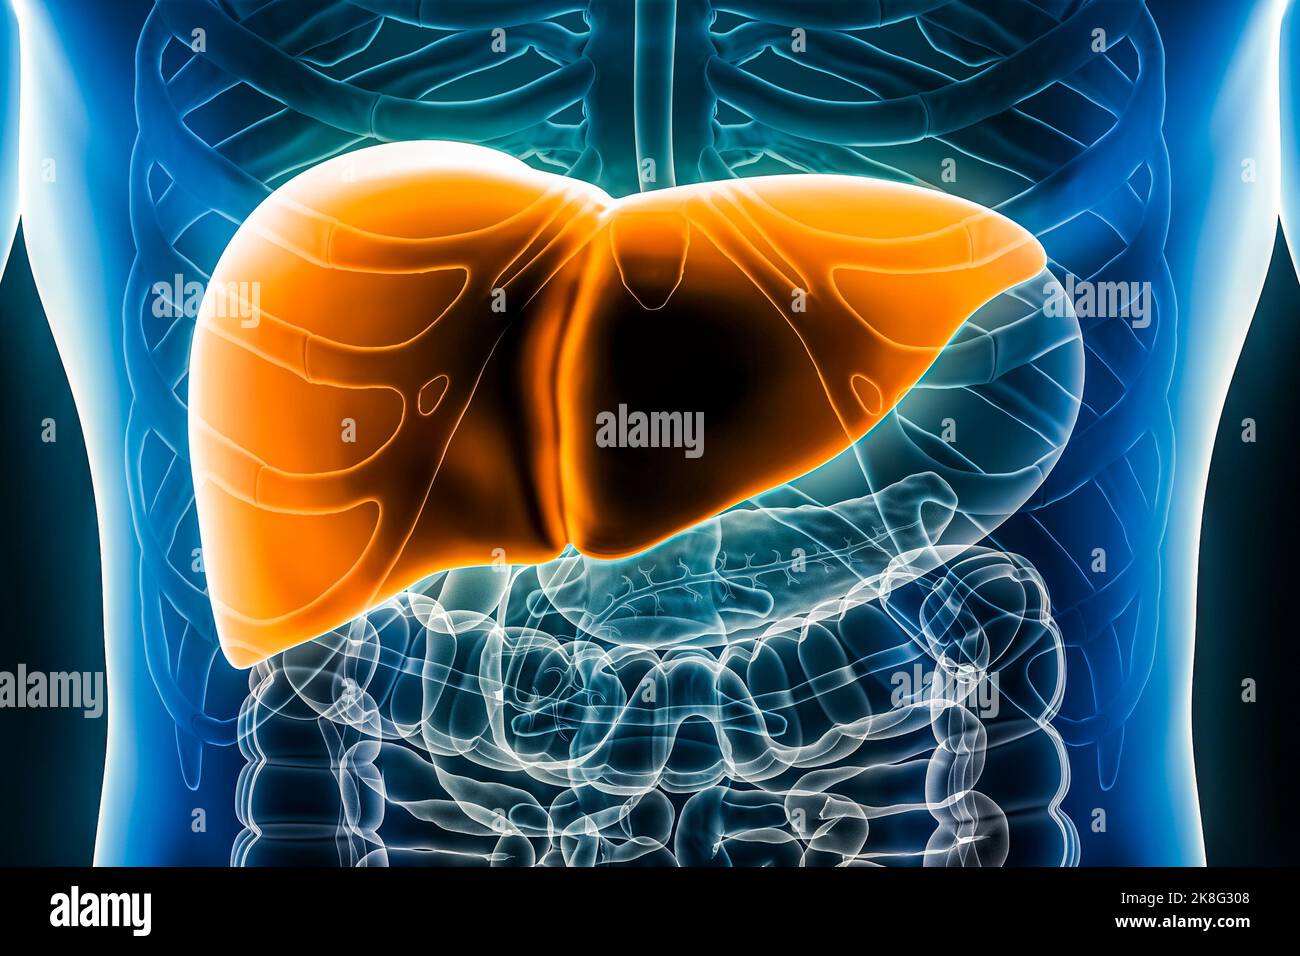 Immagine di rendering 3D del fegato primo piano della vista anteriore o anteriore. Organo del sistema digestivo umano. Anatomia, medicina, biologia, scienza, sanità c Foto Stock